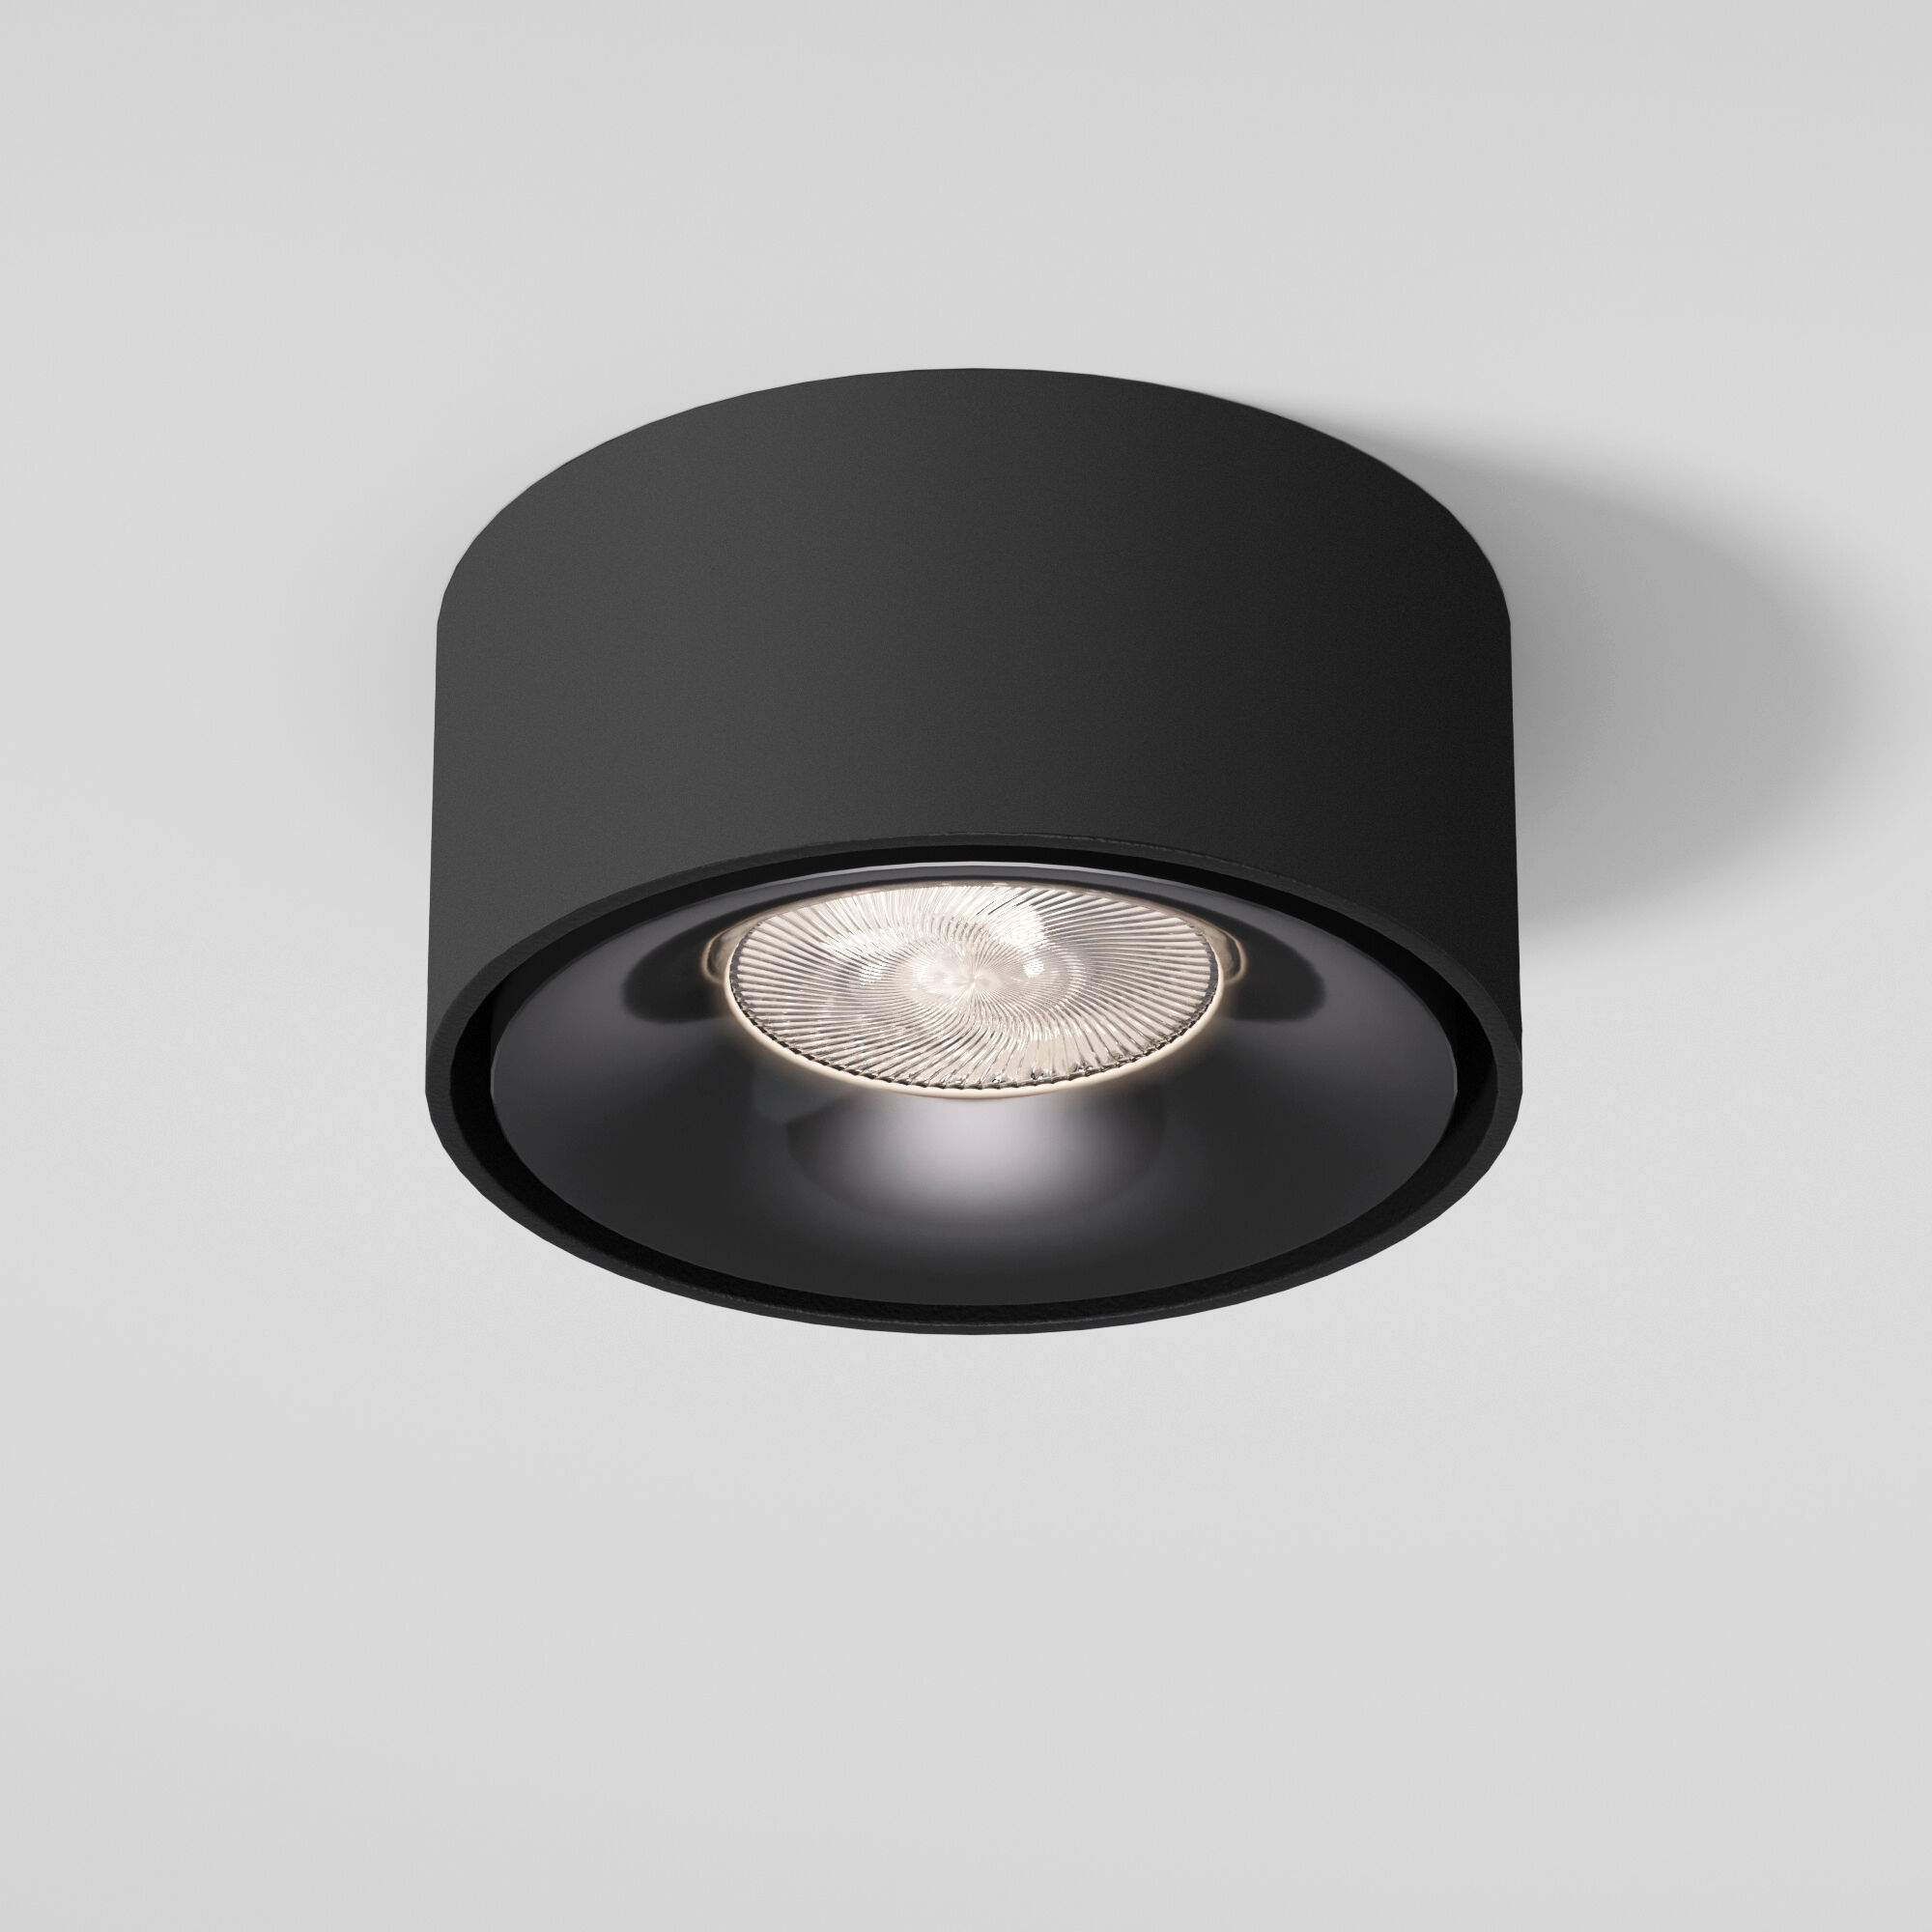 Светильник встраиваемый светодиодный Glam черный 25095/LED